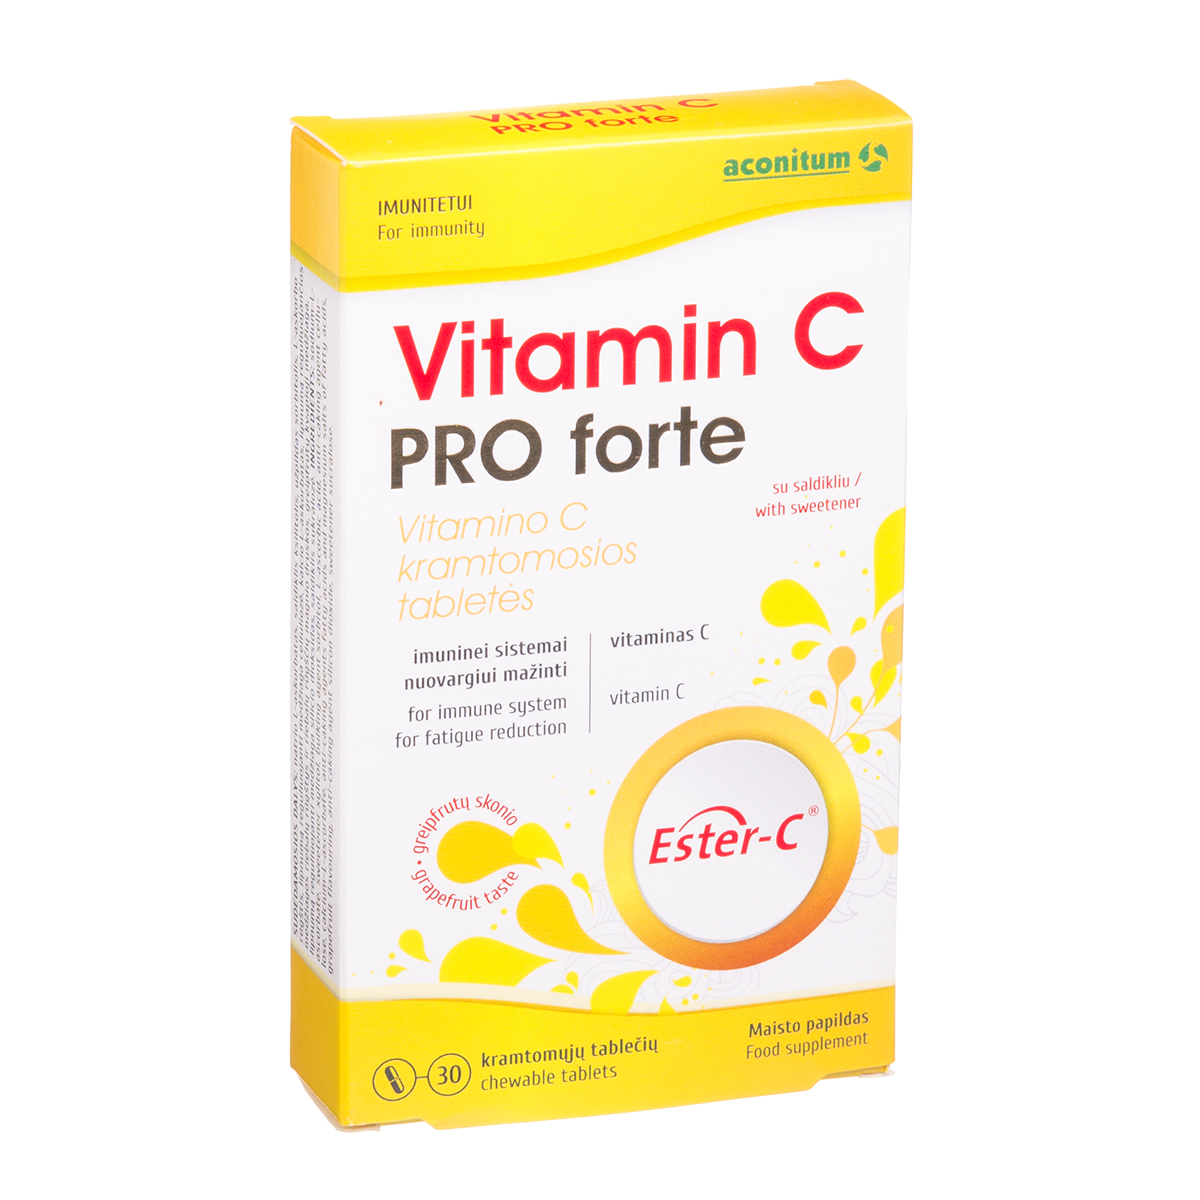 VITAMIN C PRO FORTE, vitaminas C, 30 kramtomųjų tablečių